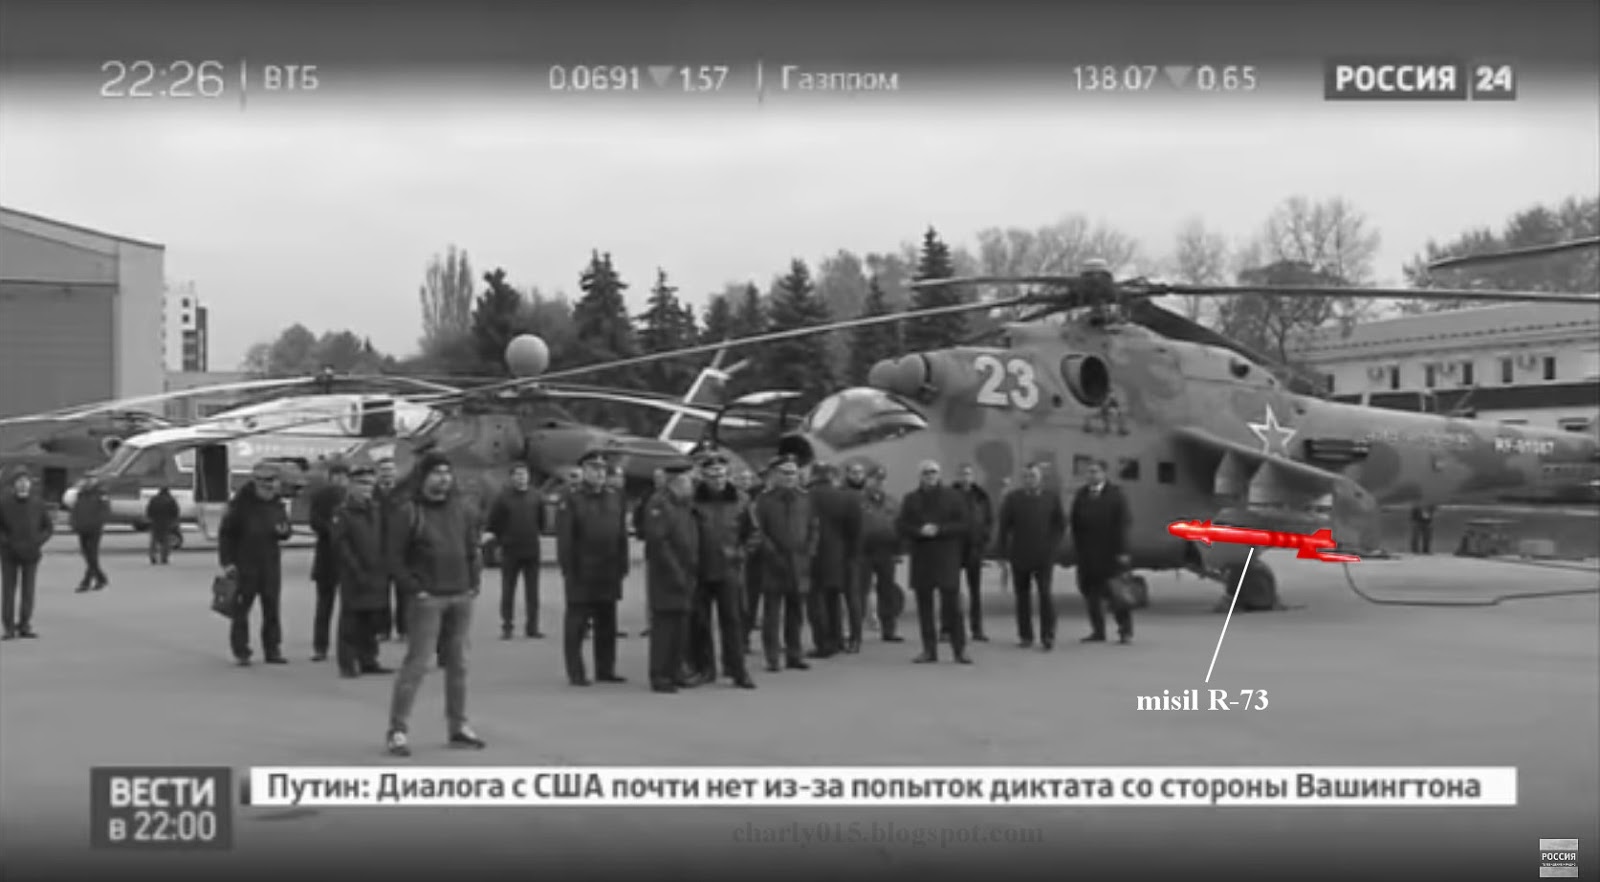 Helicopteros del Ejercito - Página 11 Mi-24%2Bcon%2Br-73%2Ba